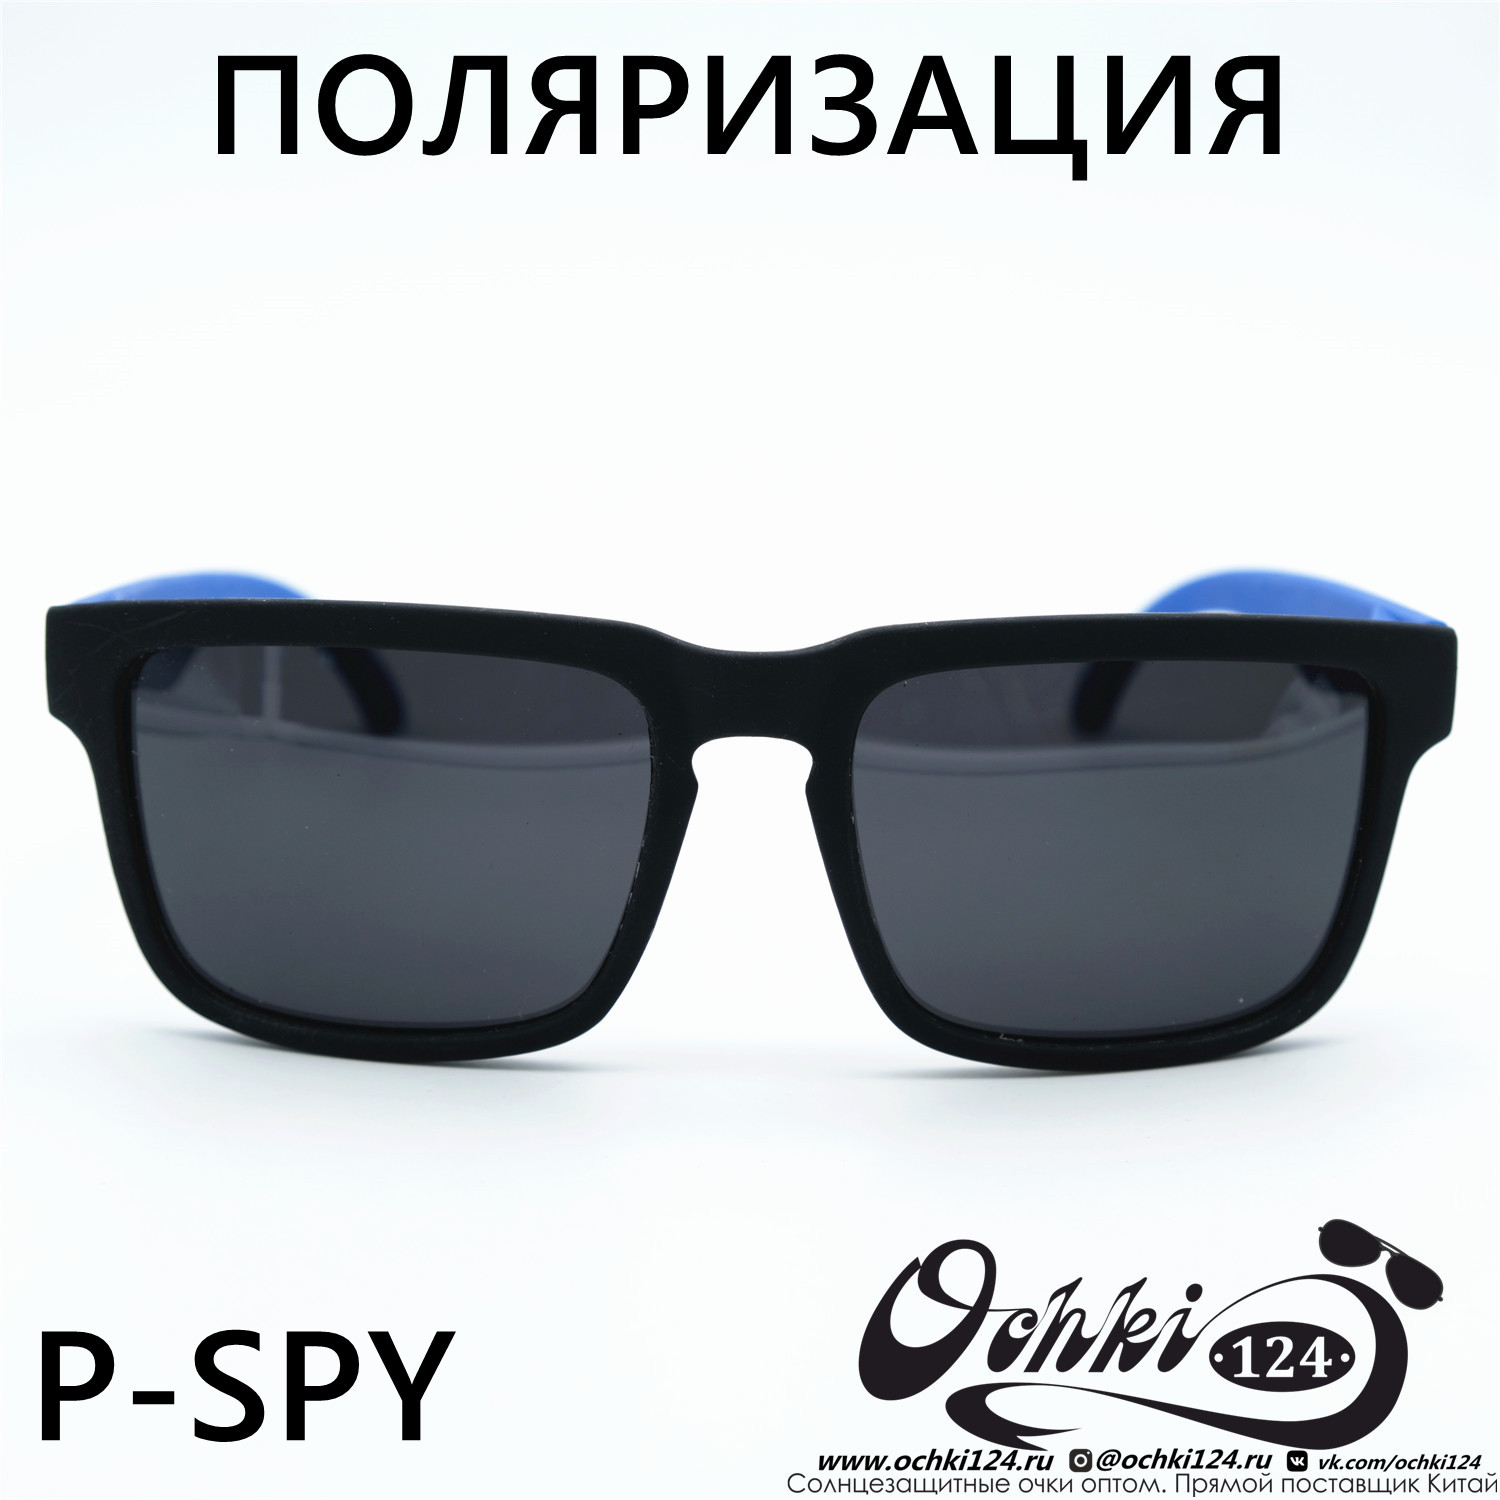  Солнцезащитные очки картинка Мужские MATRIUXT  Квадратные P-SPY-C3 